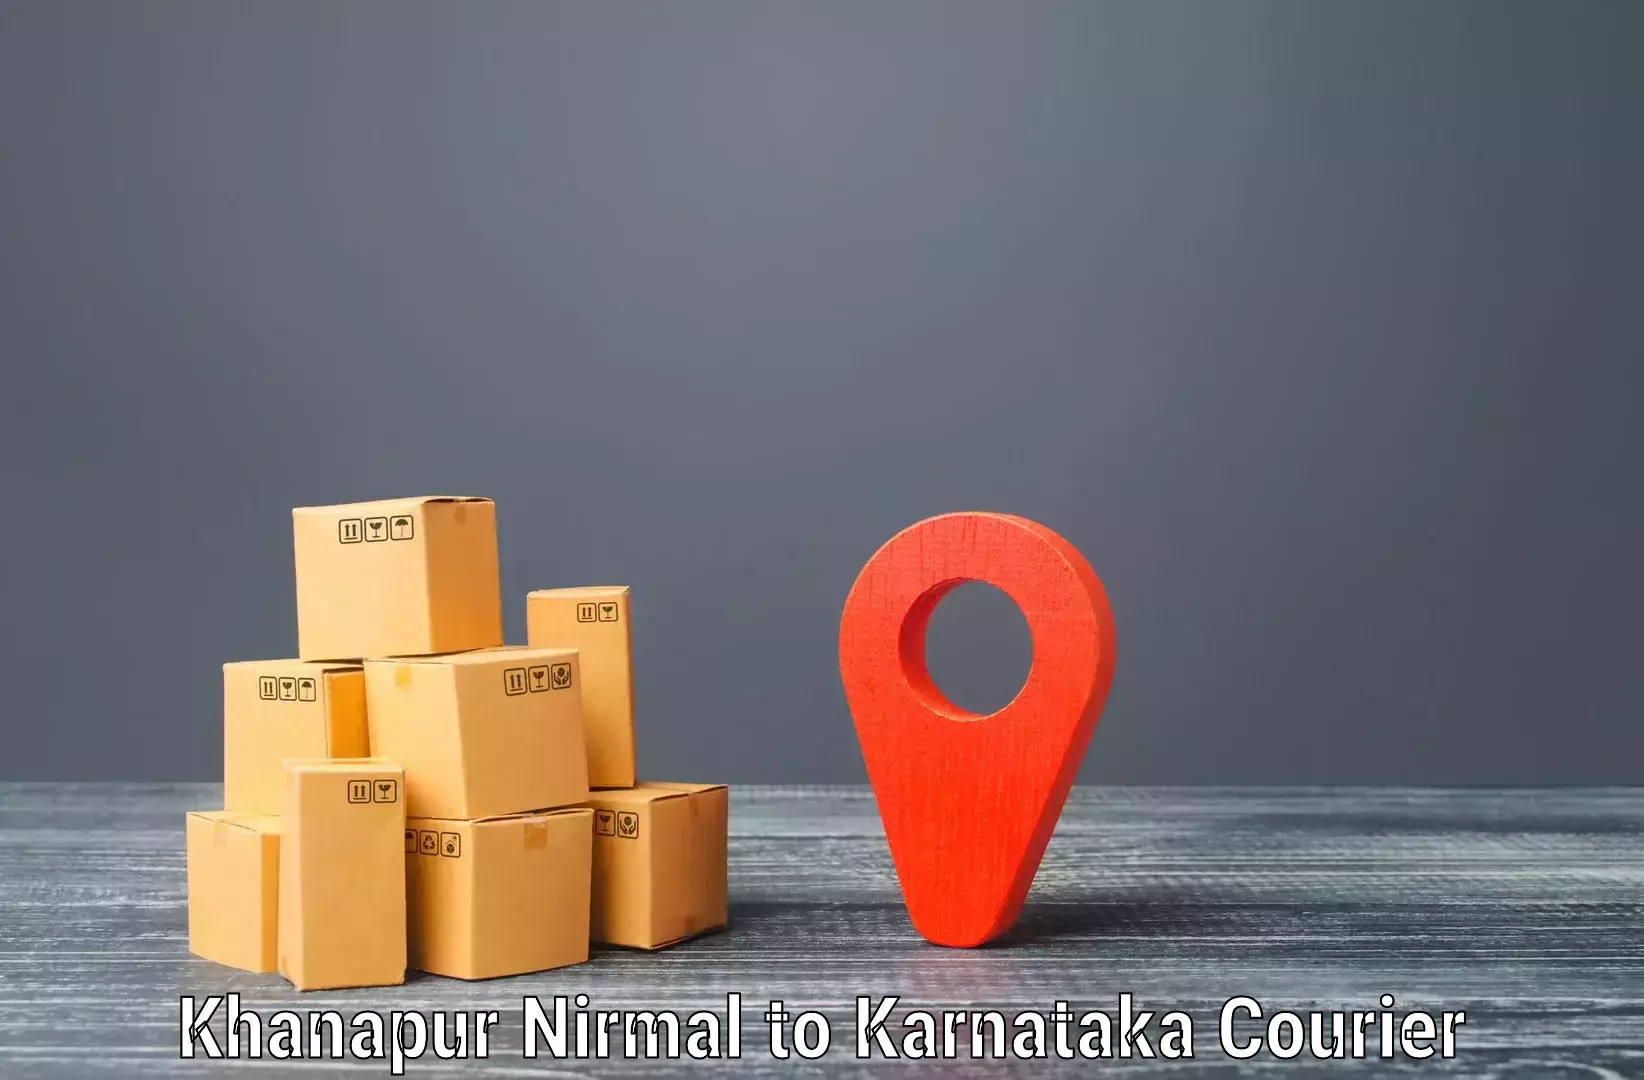 Door-to-door freight service Khanapur Nirmal to Sindhanur